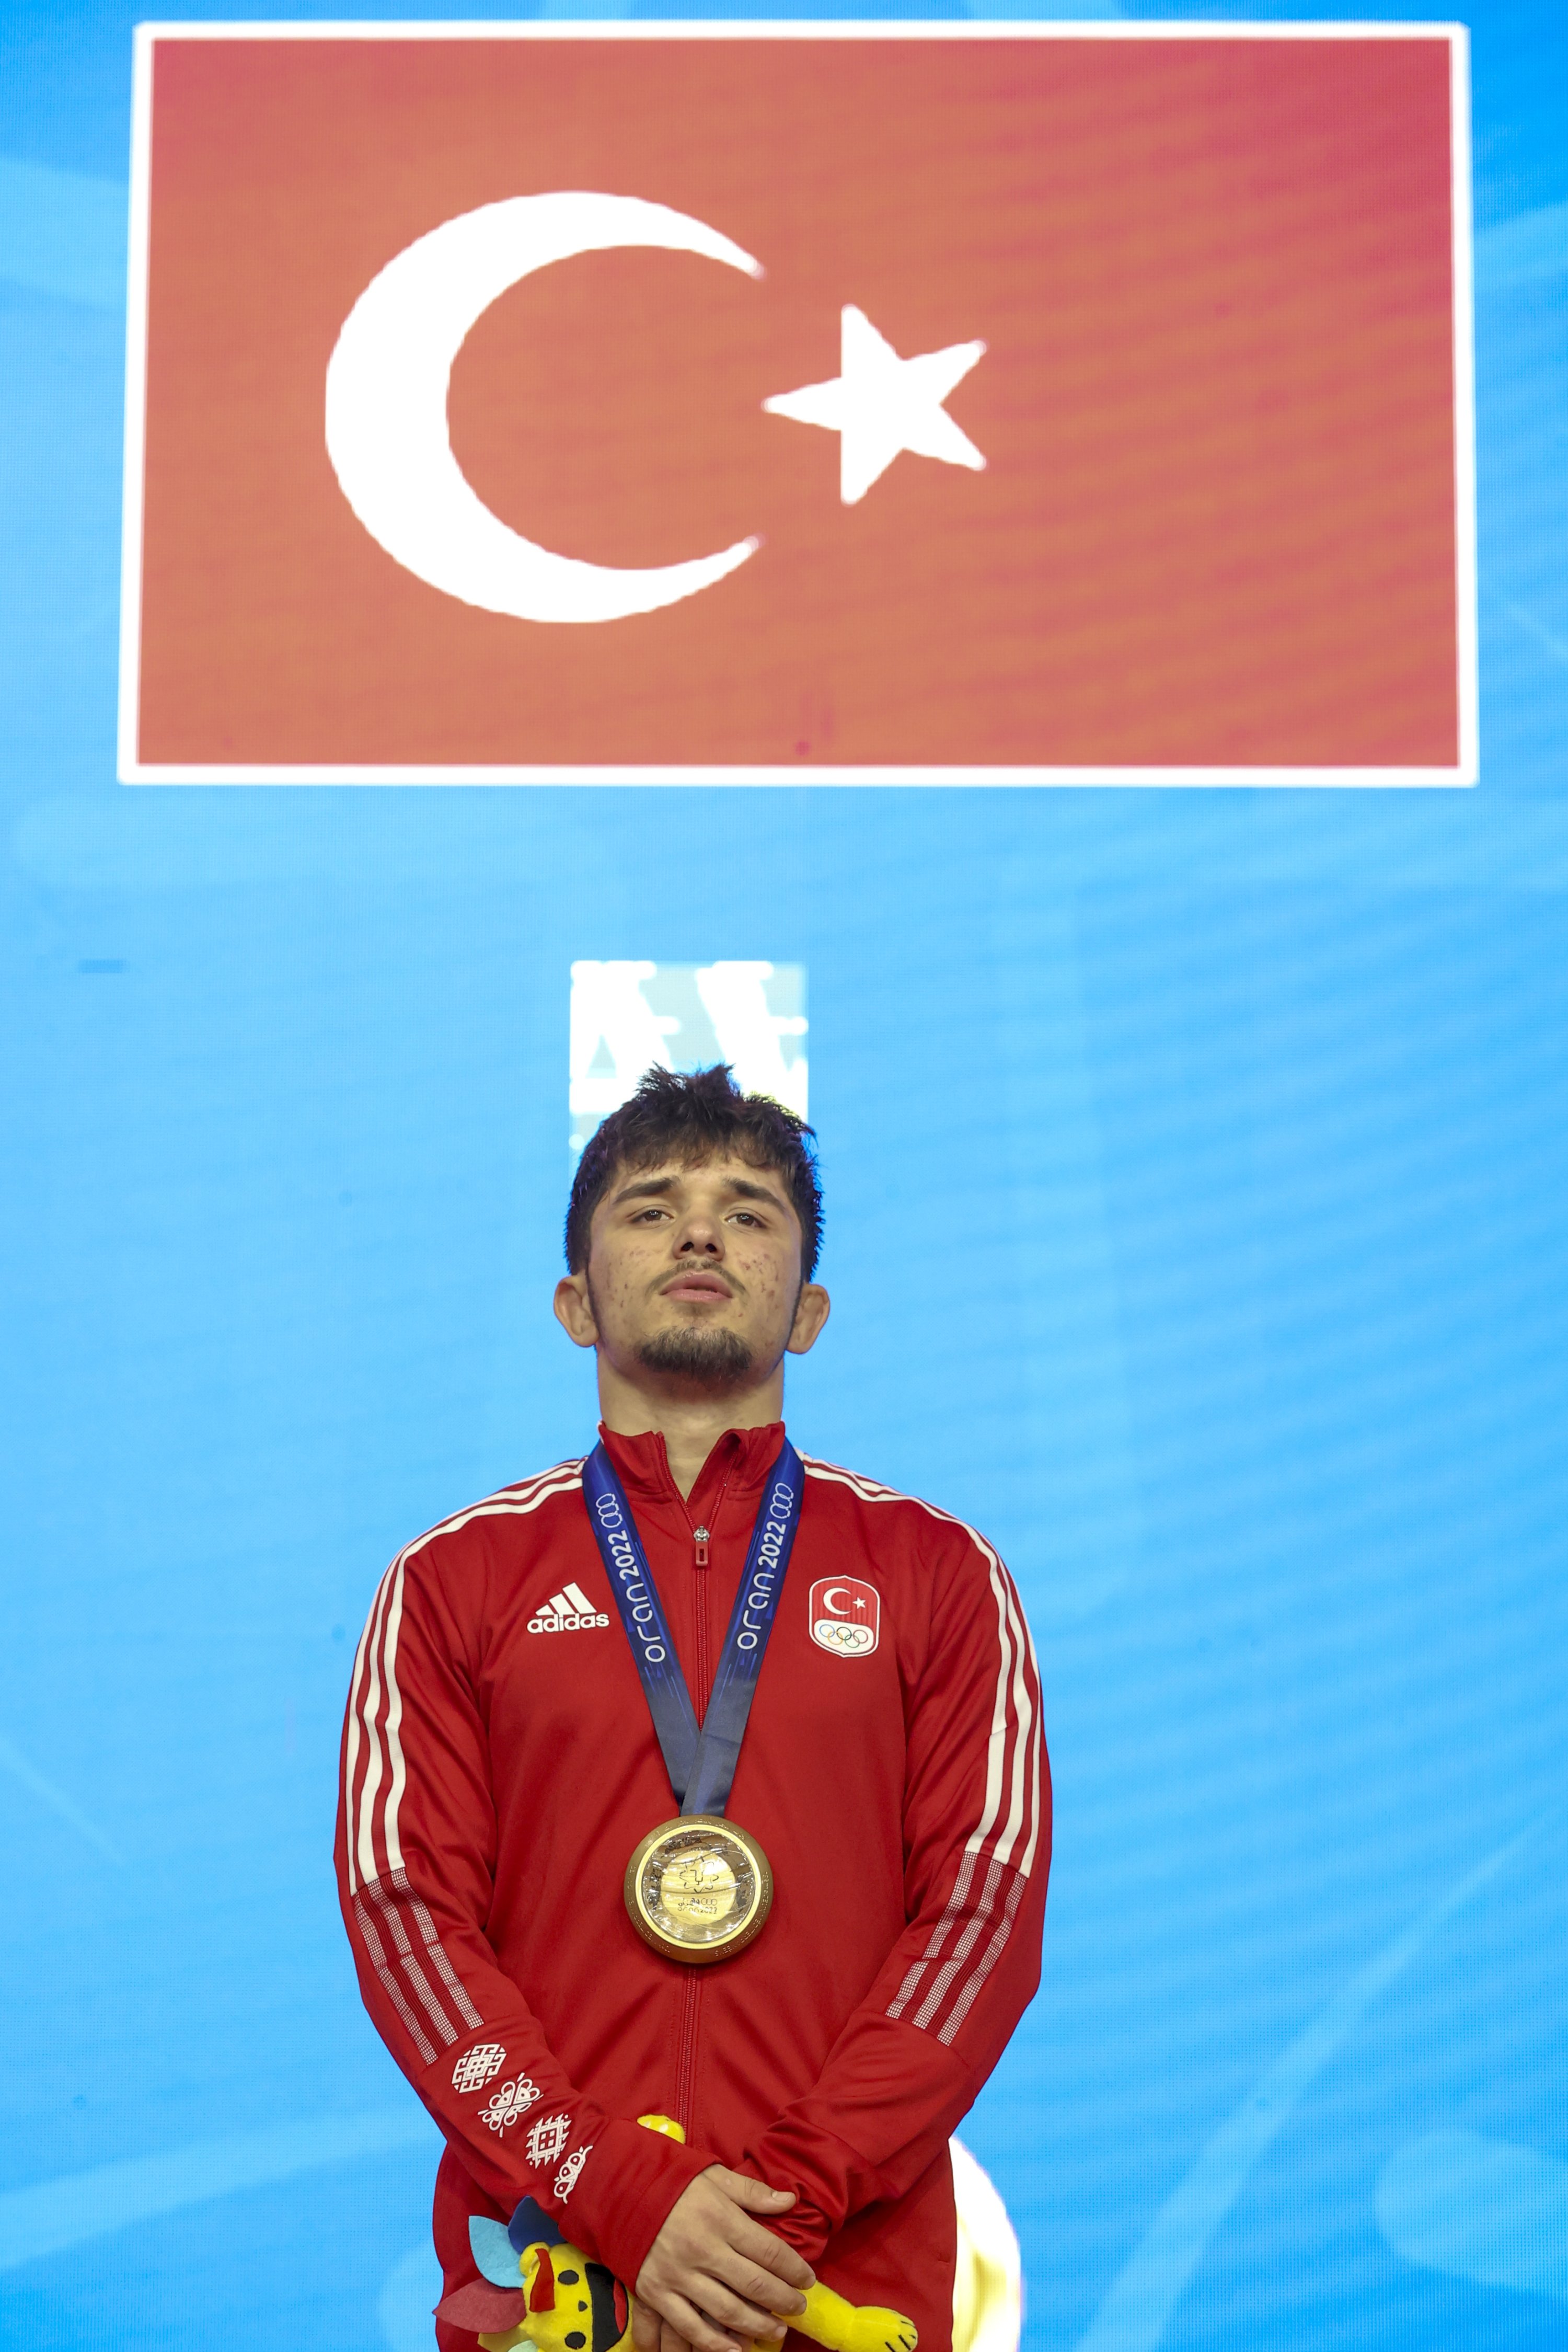 Pegulat Muhammet Karavuş naik ke podium setelah memenangkan emas gaya bebas 57 kg putra di Mediterranean Games, Oran, Aljazair, 28 Juni 2022. (AA Photo)